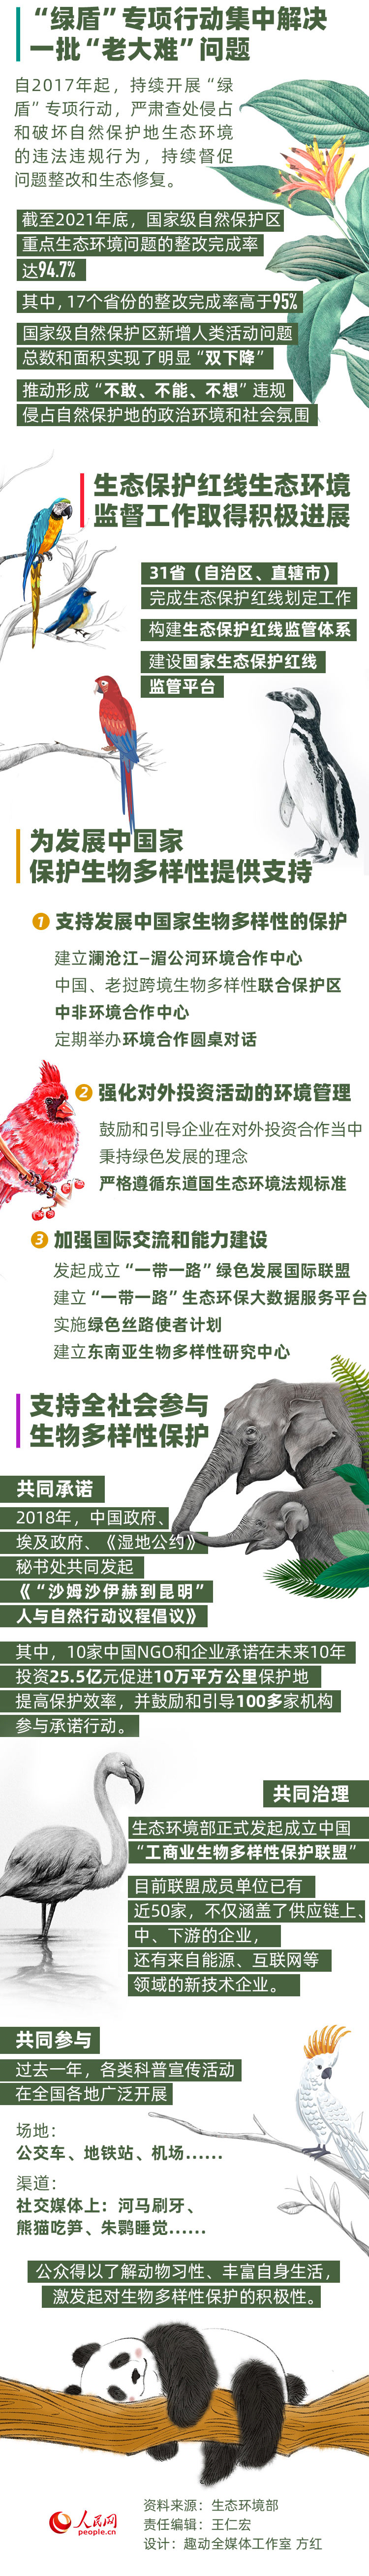 多样生物 共同守护 数读生物多样性保护的中国实践